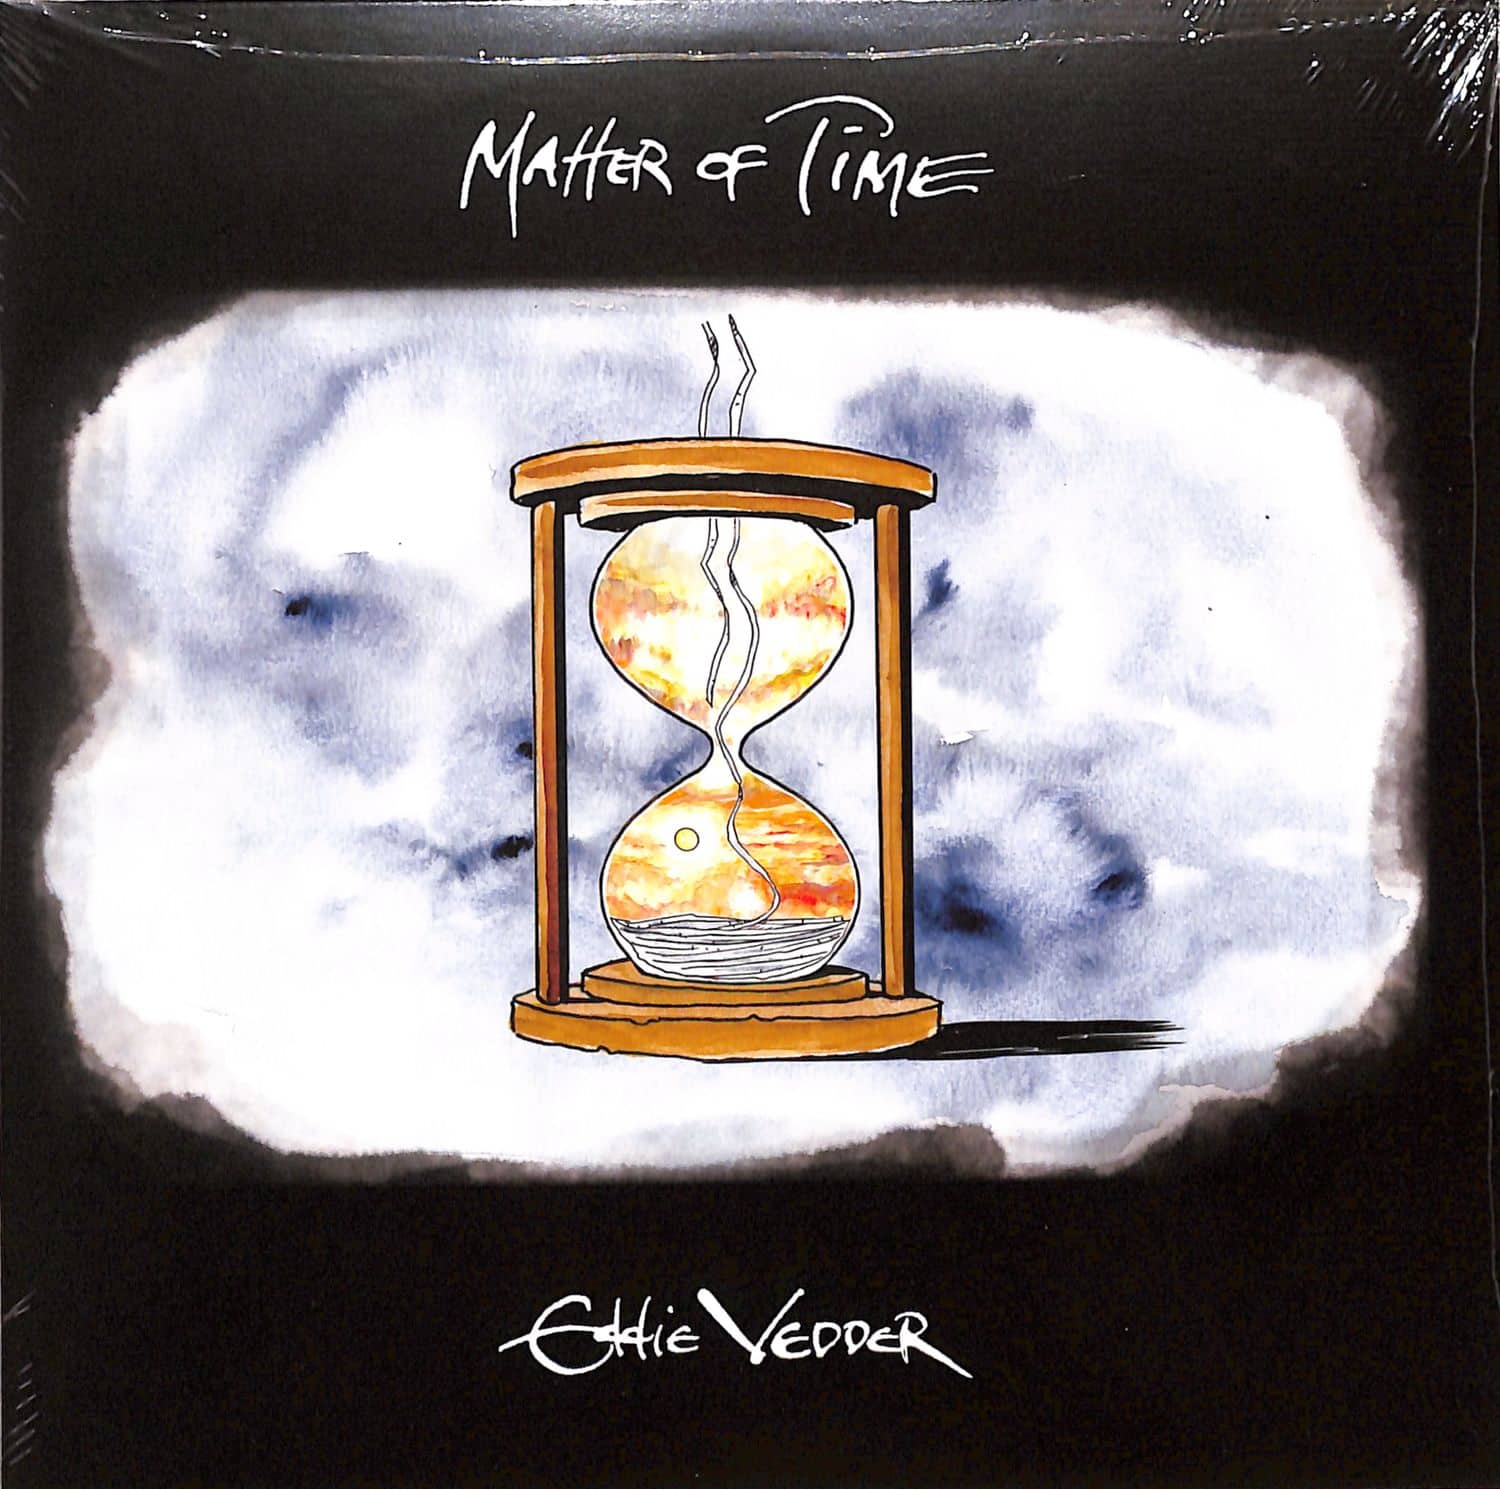 Eddie Vedder - MATTER OF TIME / SAY HI 